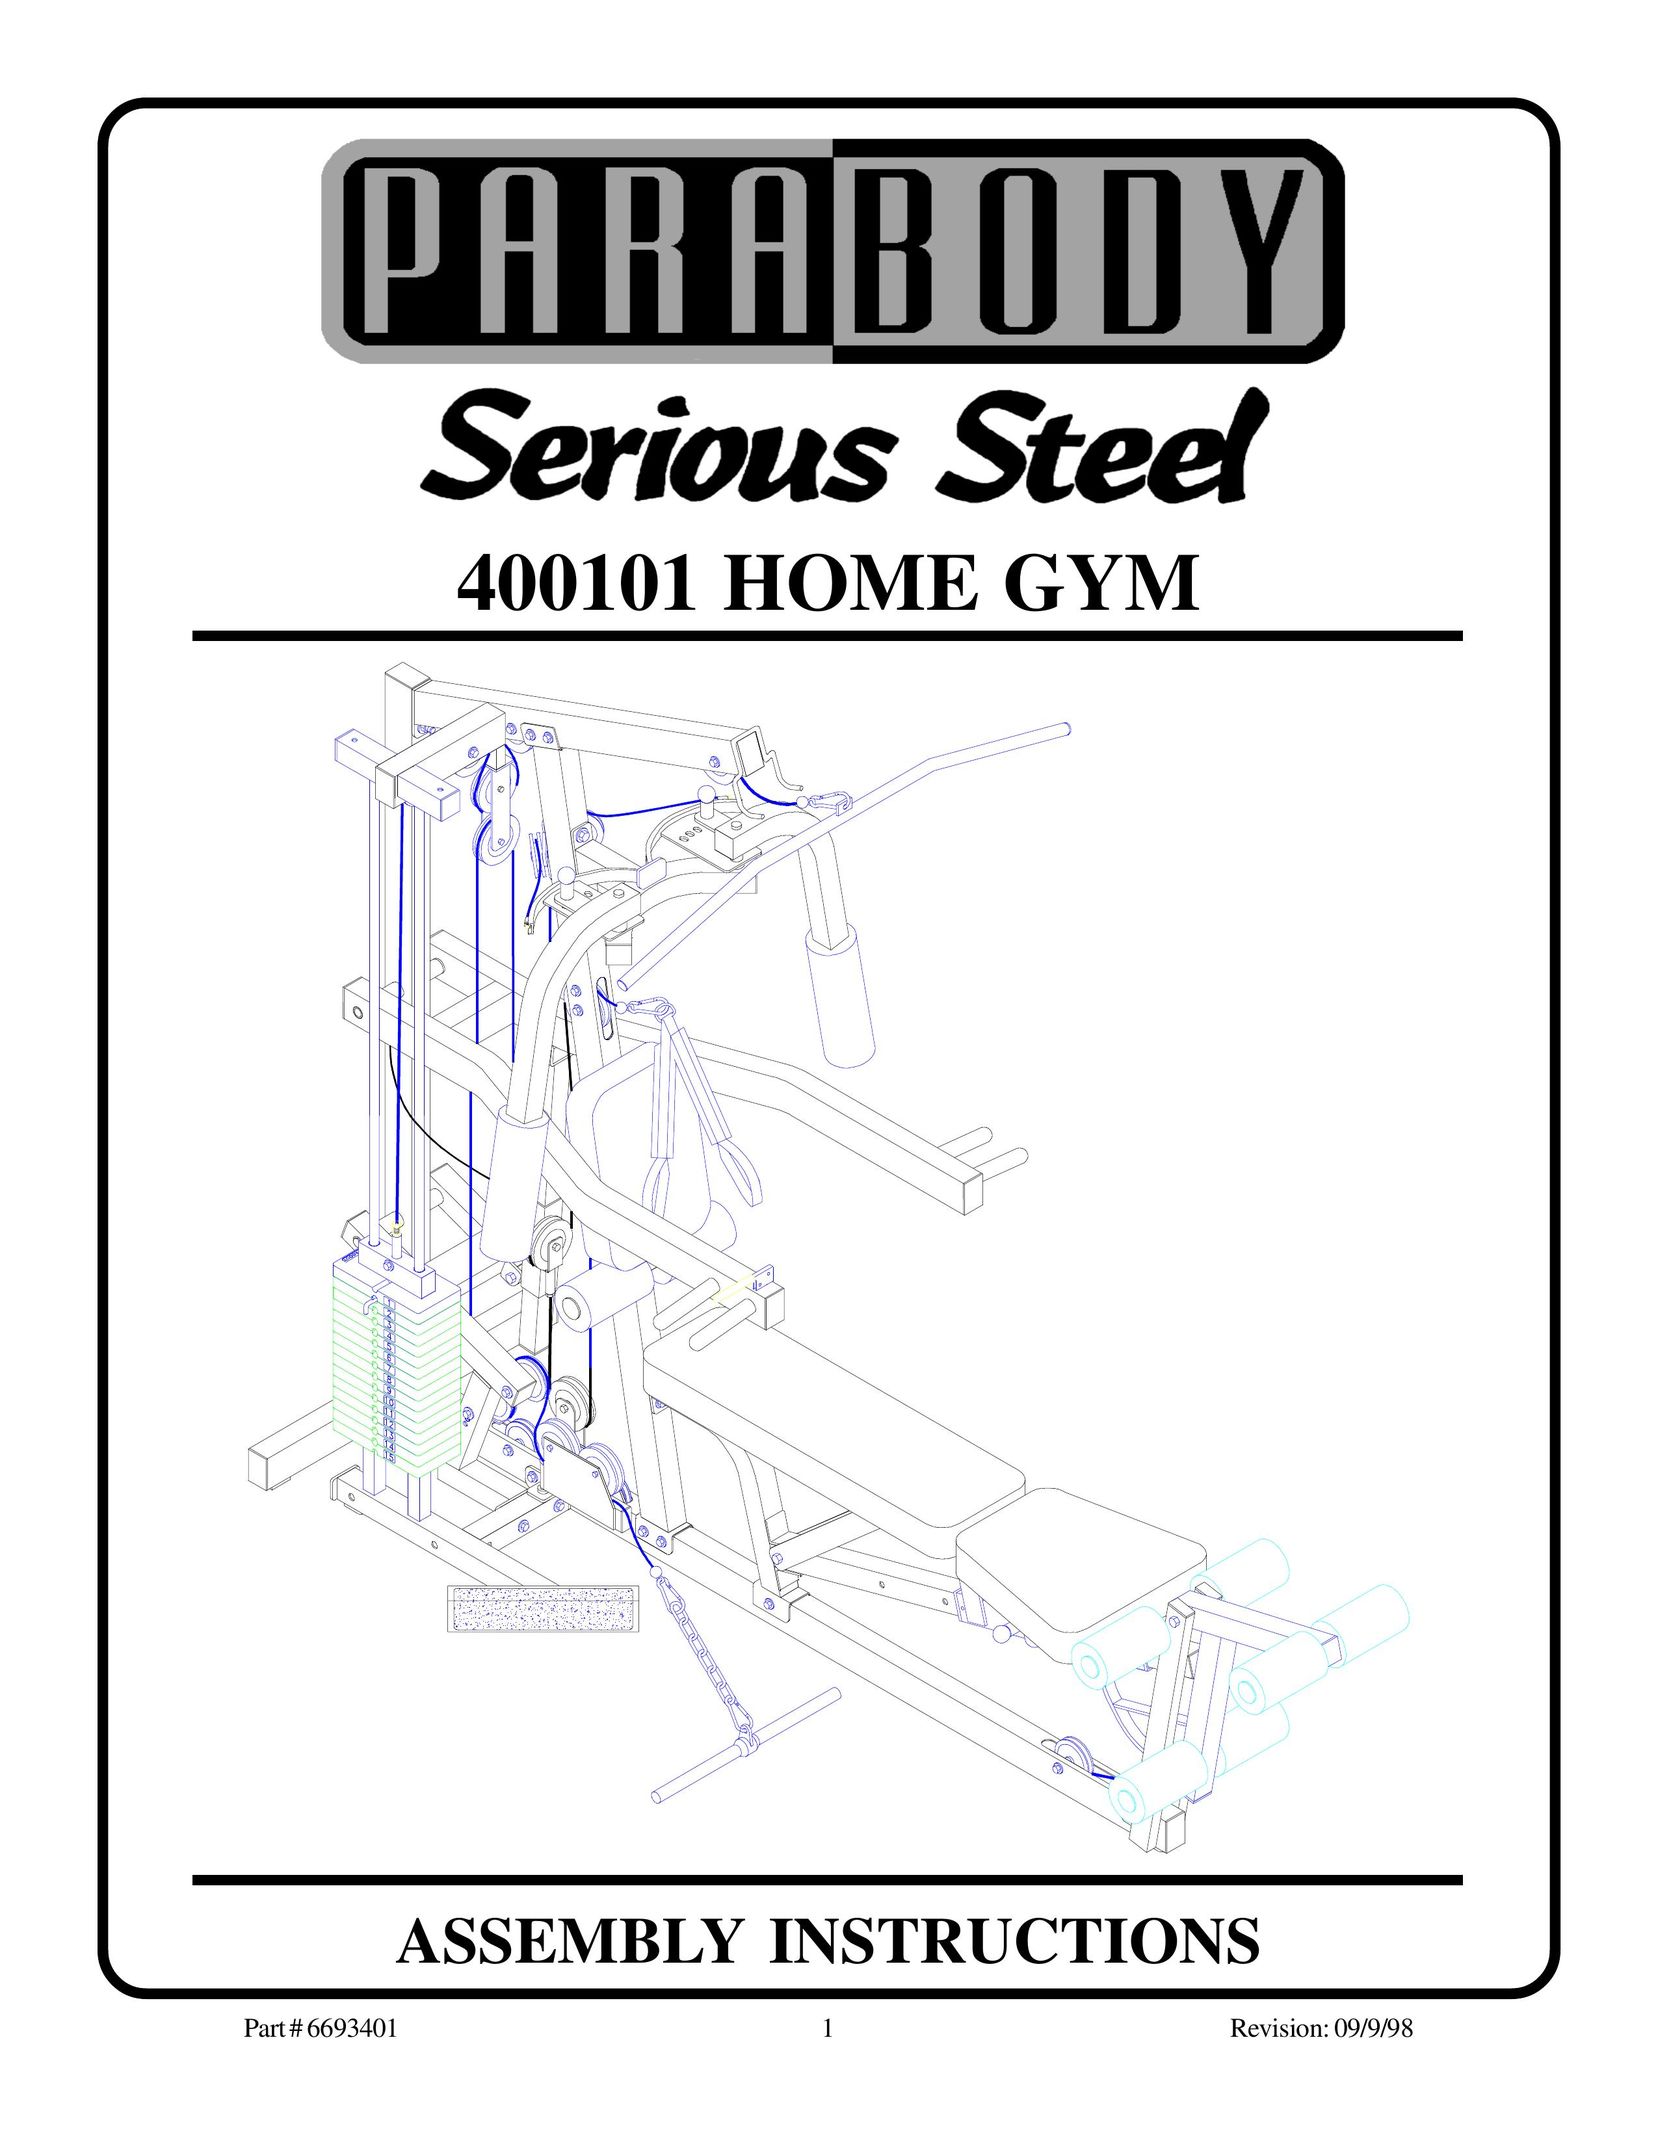 ParaBody 400101 Home Gym User Manual